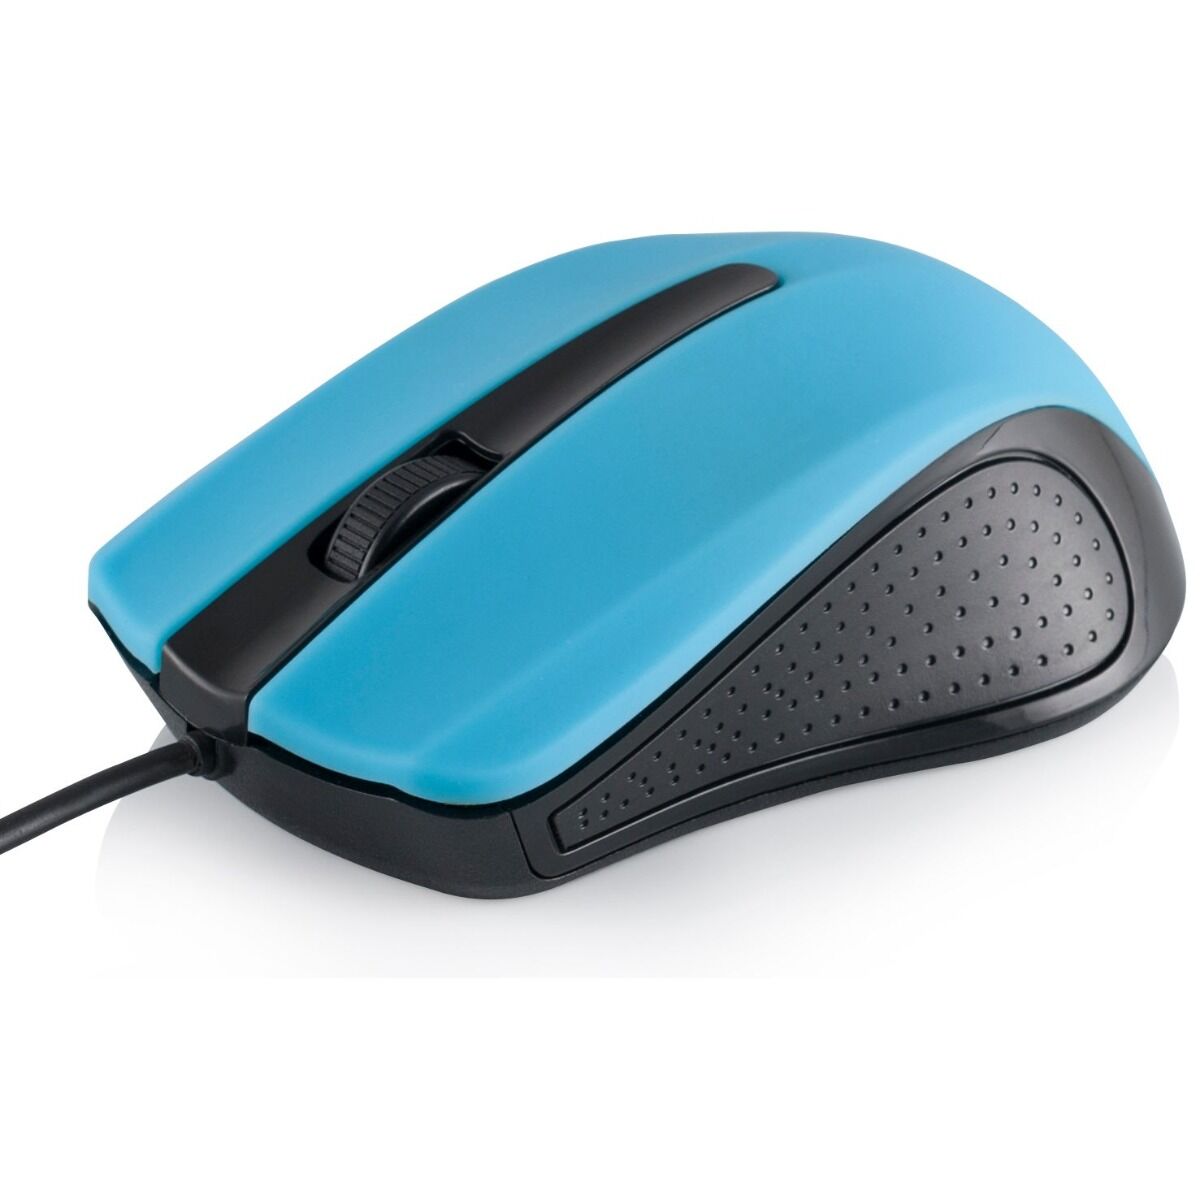 Mouse cu fir M9 Modecom, 3 butoane, Optic, Albastru